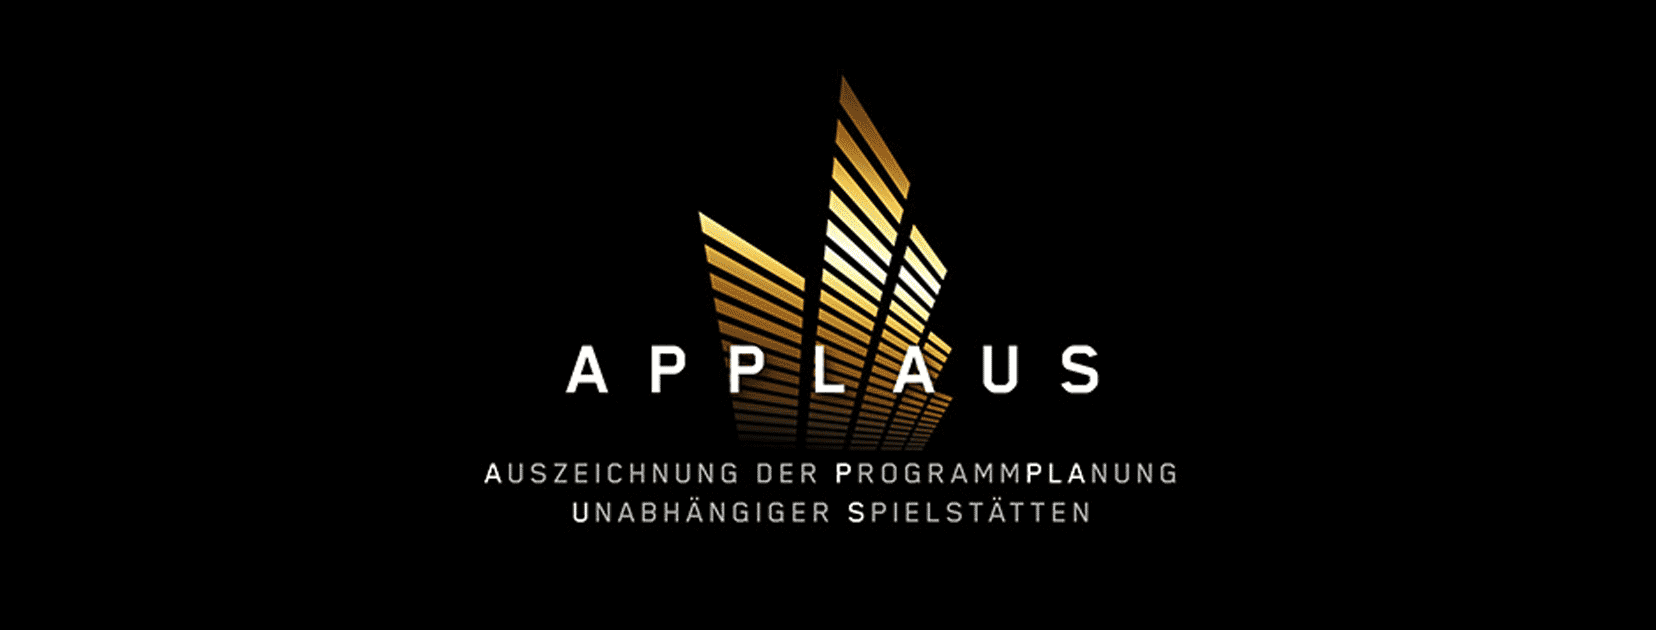 SH-jazzforum-bayreuth-preistraeger-applaus-2017